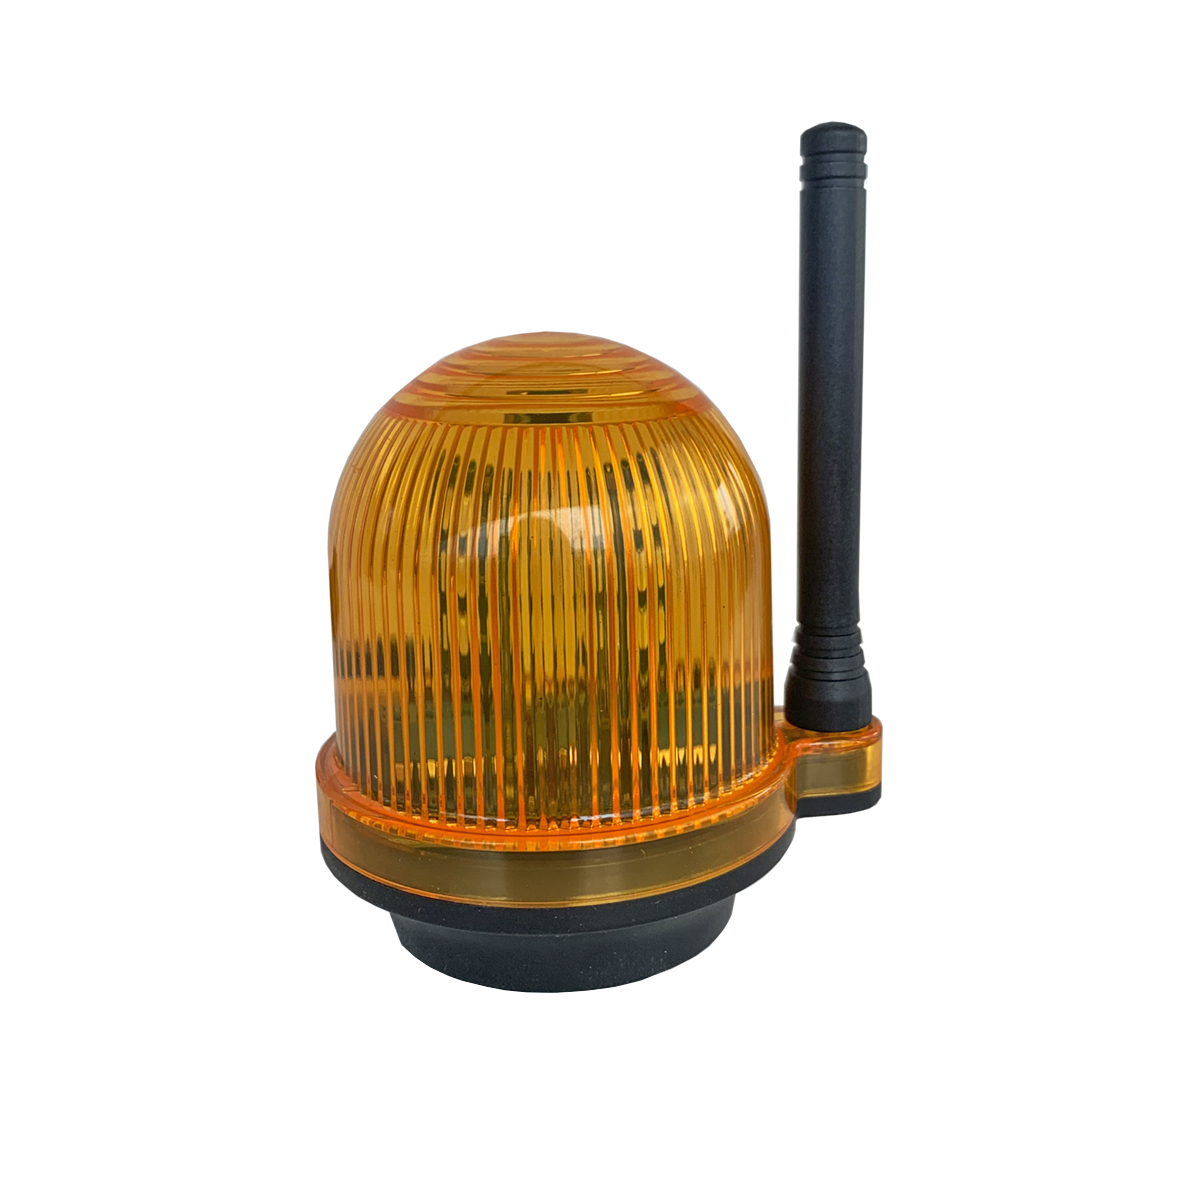 Сигнальная лампа с звуковым сигналом для промышленных объектов Nord Ice YS-111 сигнальная лампа эра pro no902180 лс47 б0037060